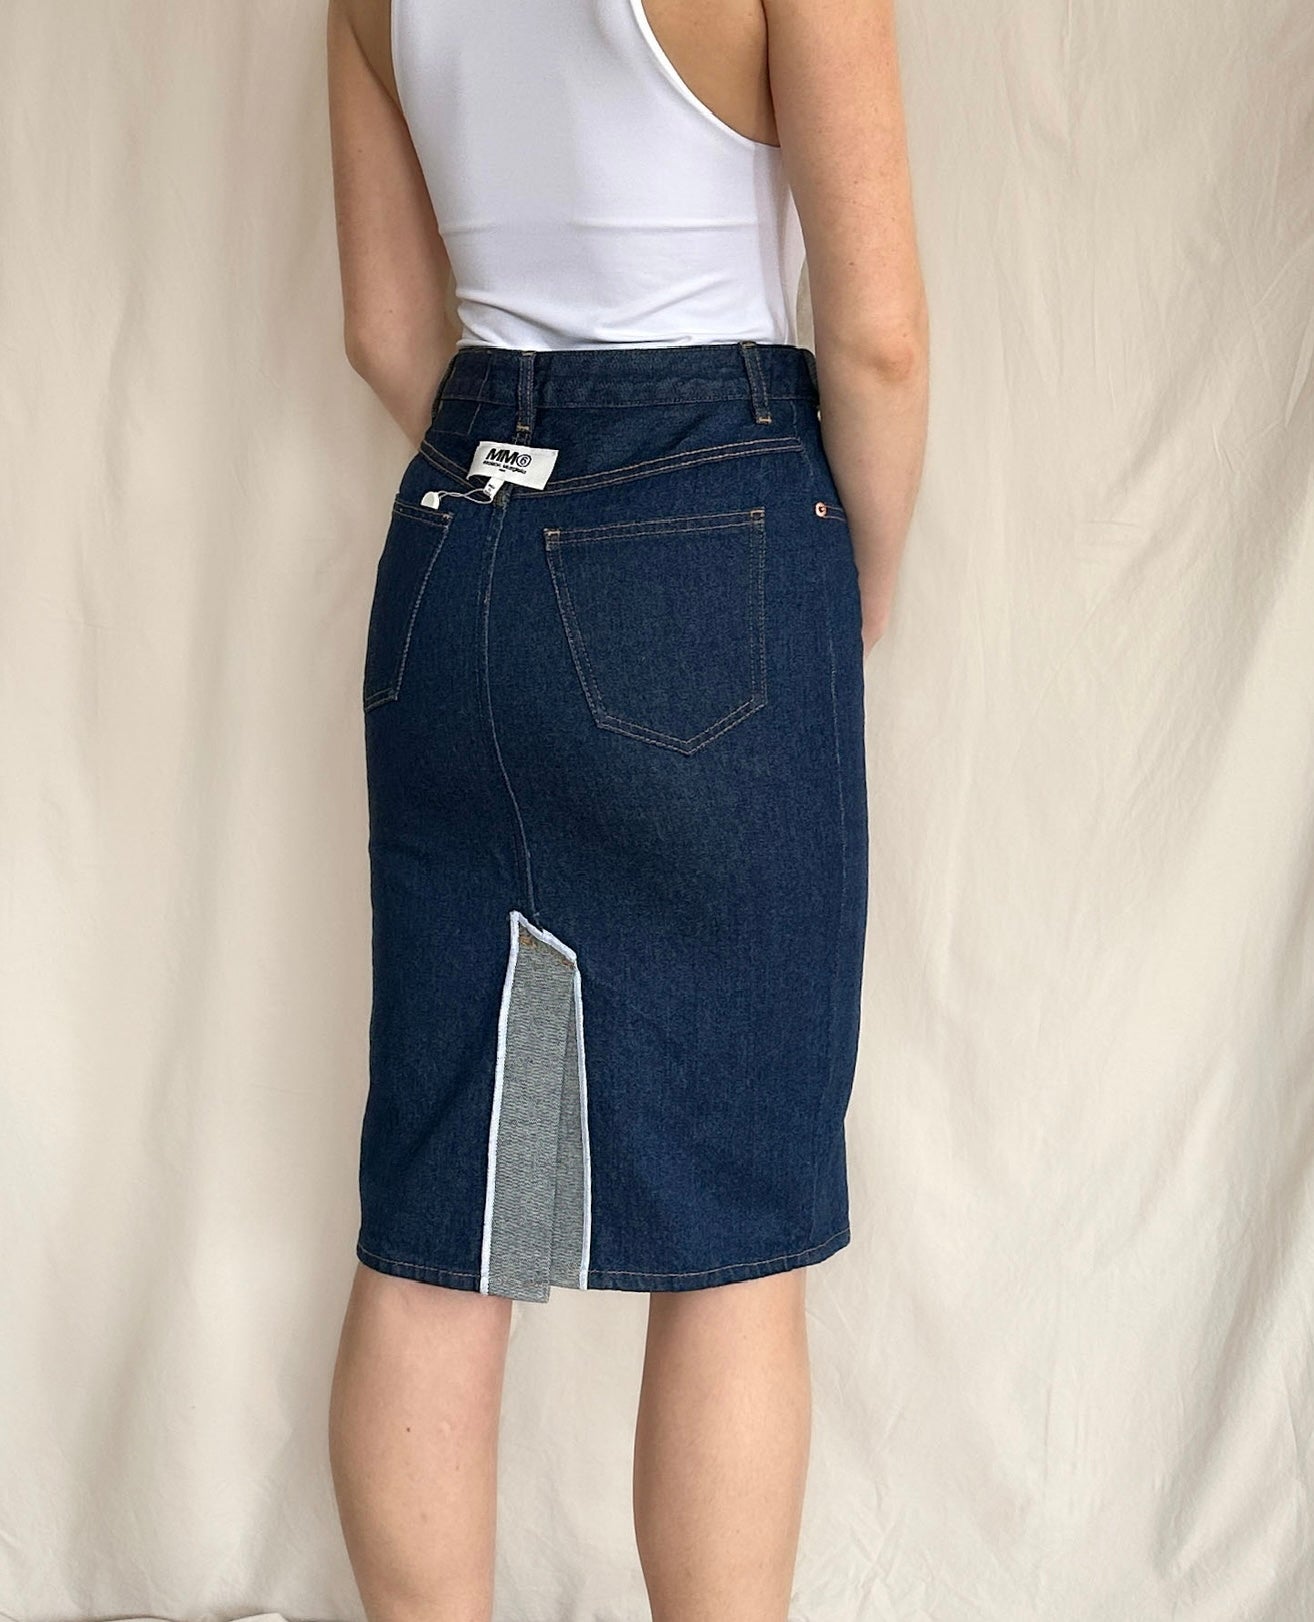 Brand New MM6 Maison Margiela Blue Denim Skirt Size 38 US 6